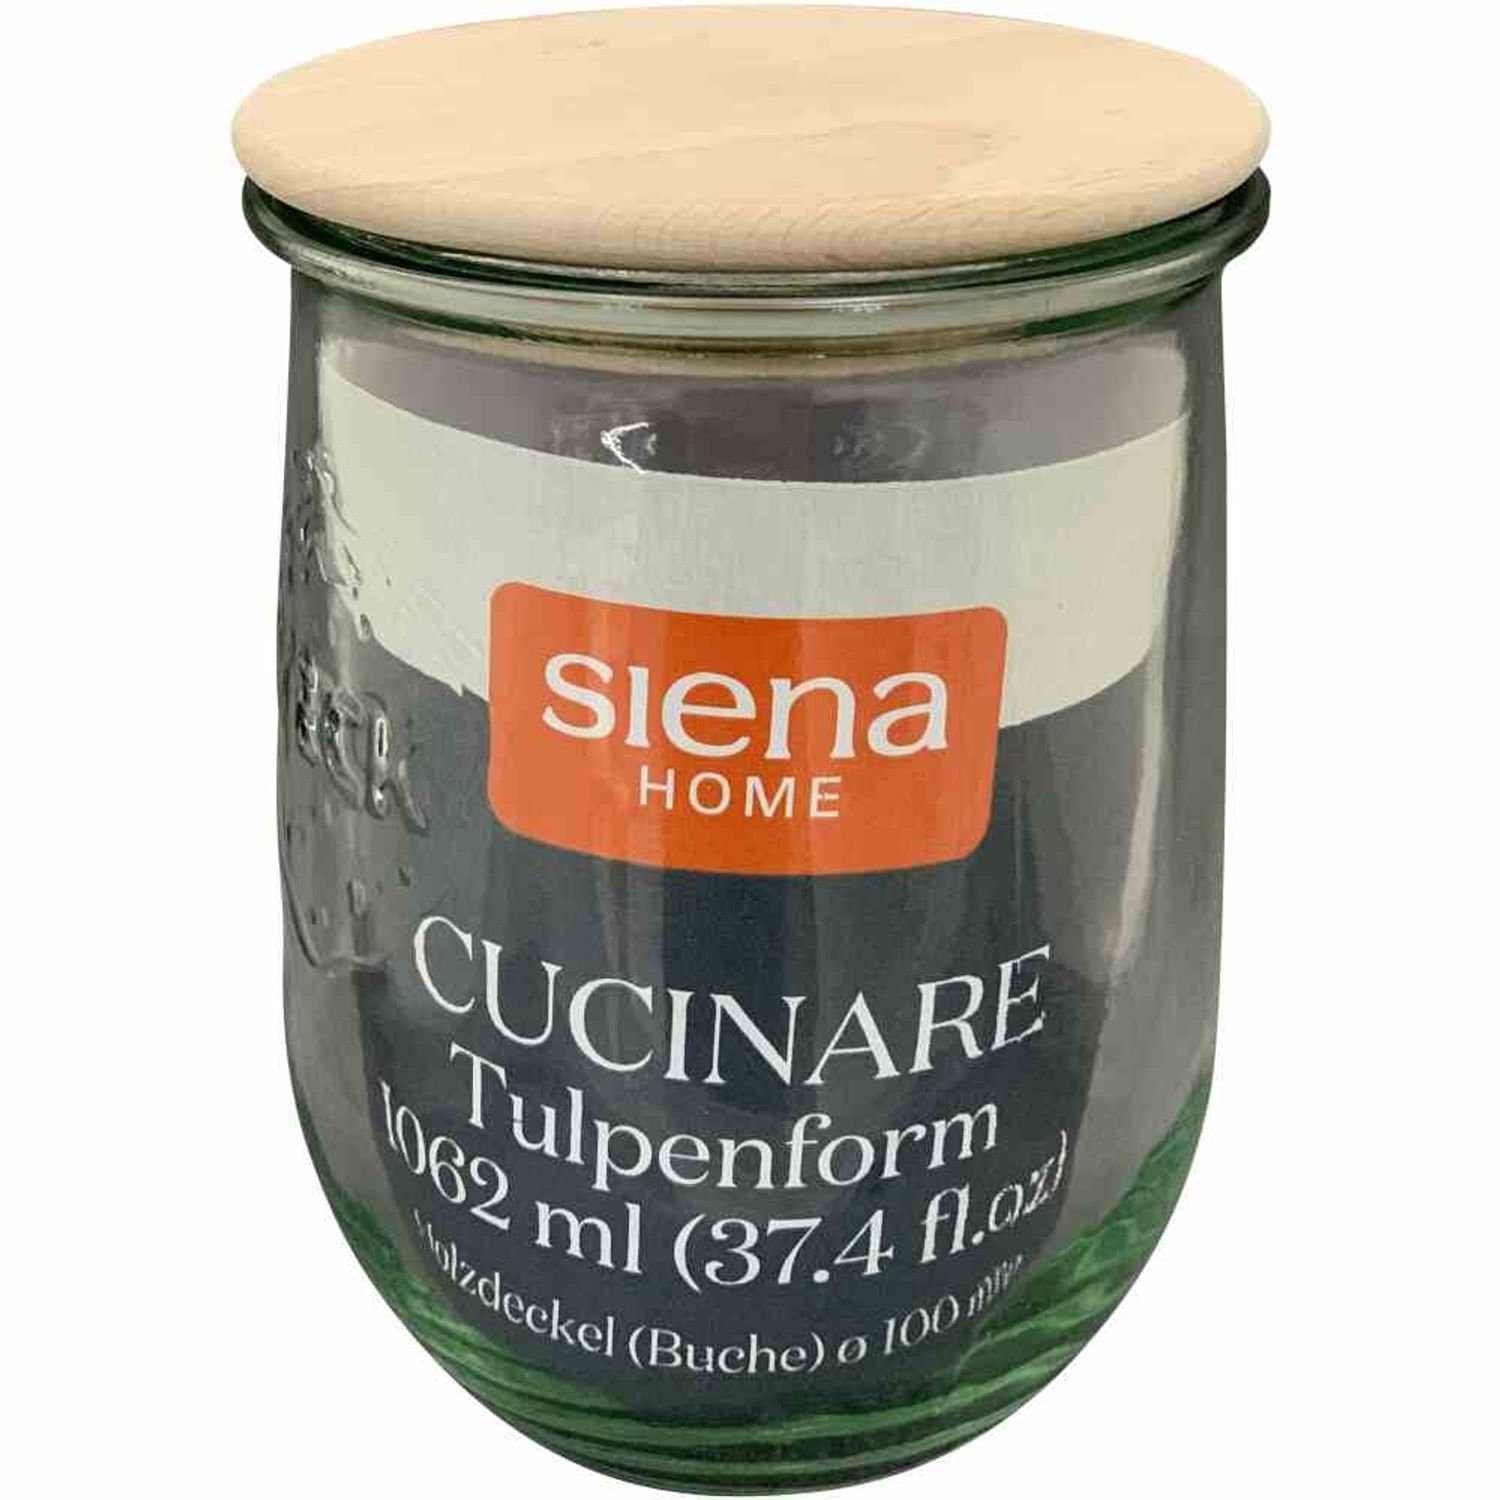 Siena HD "Cucinare" Vorratsdose 1,0 Tulpenglas Glas Home Buchenholz, l Weck-Glas,